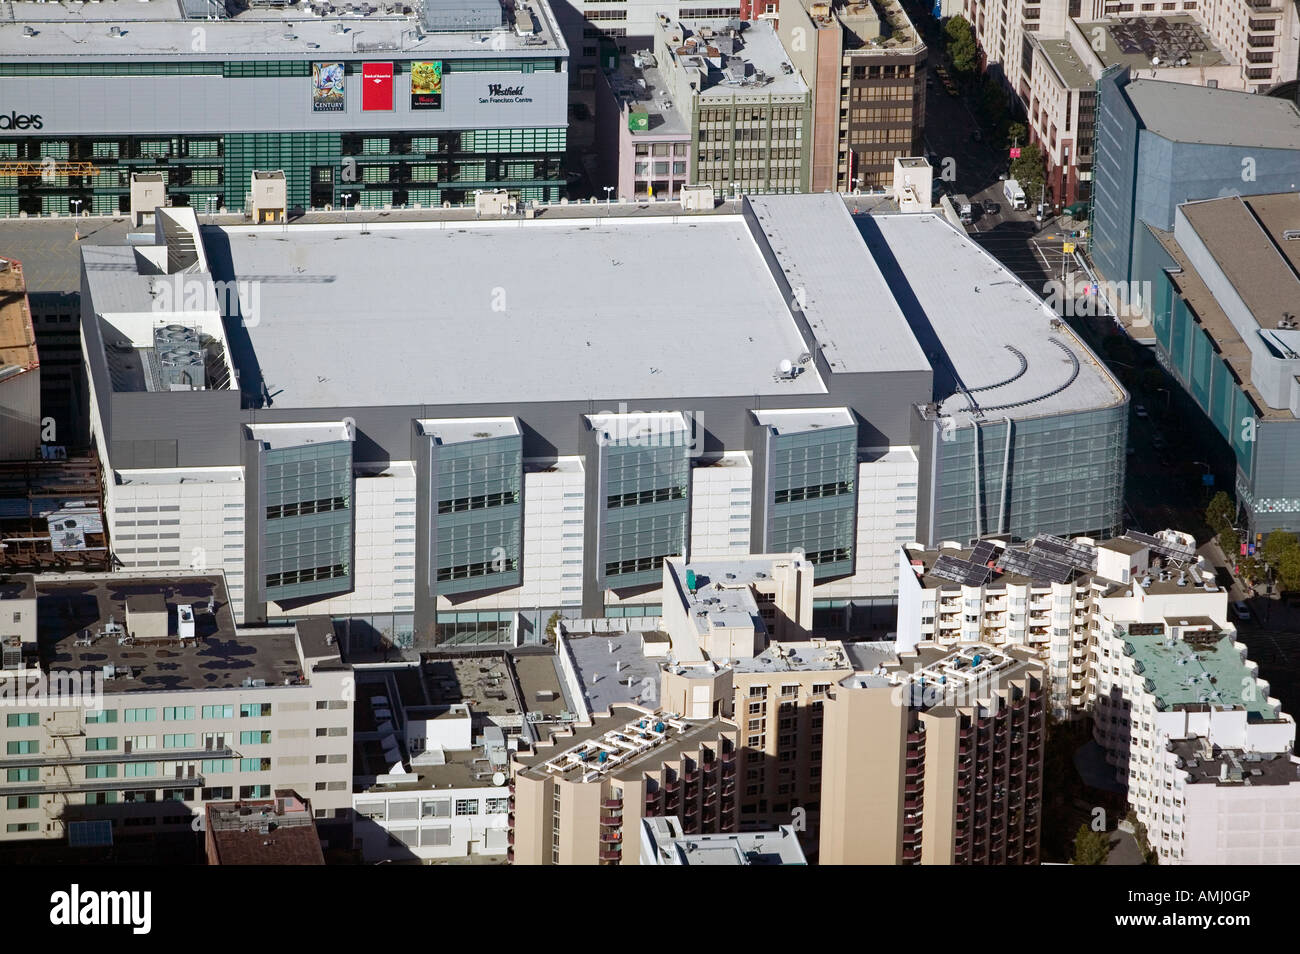 Vista aérea por encima del centro de convenciones Moscone West Convention Center de San Francisco, California Foto de stock